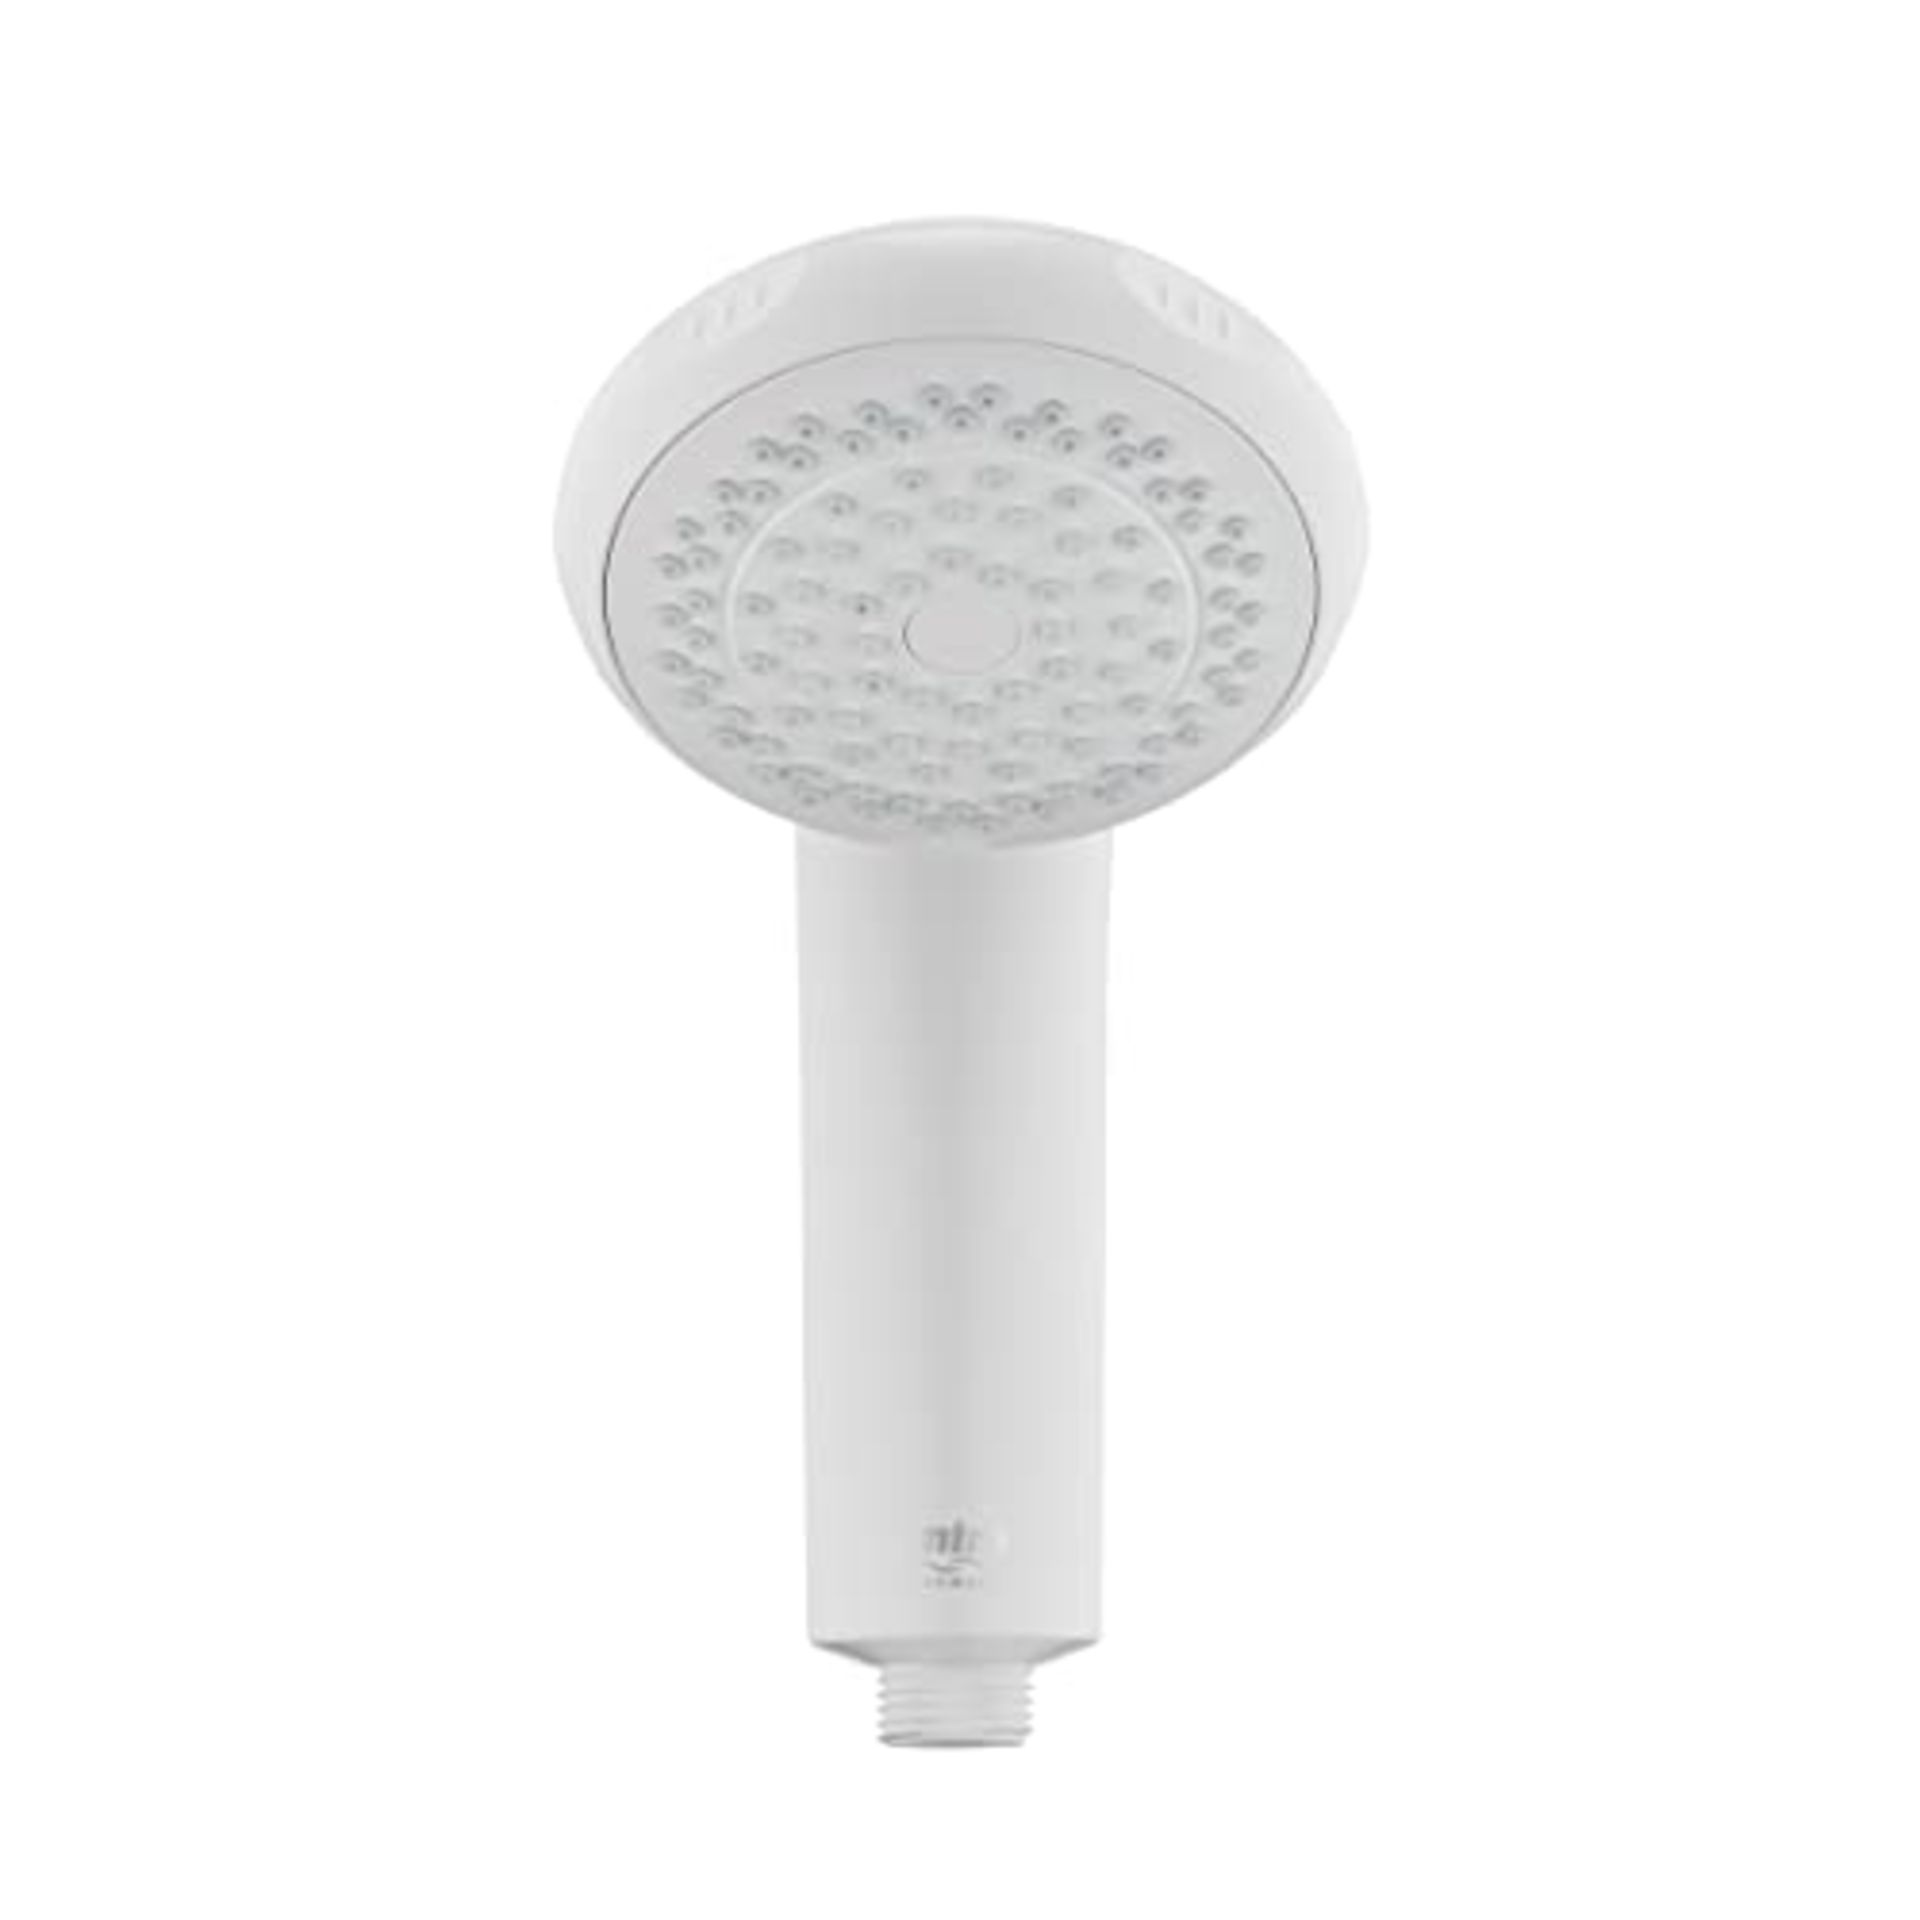 Mira Showers 2.1605.177 Logic 4 Spray Shower Head, White